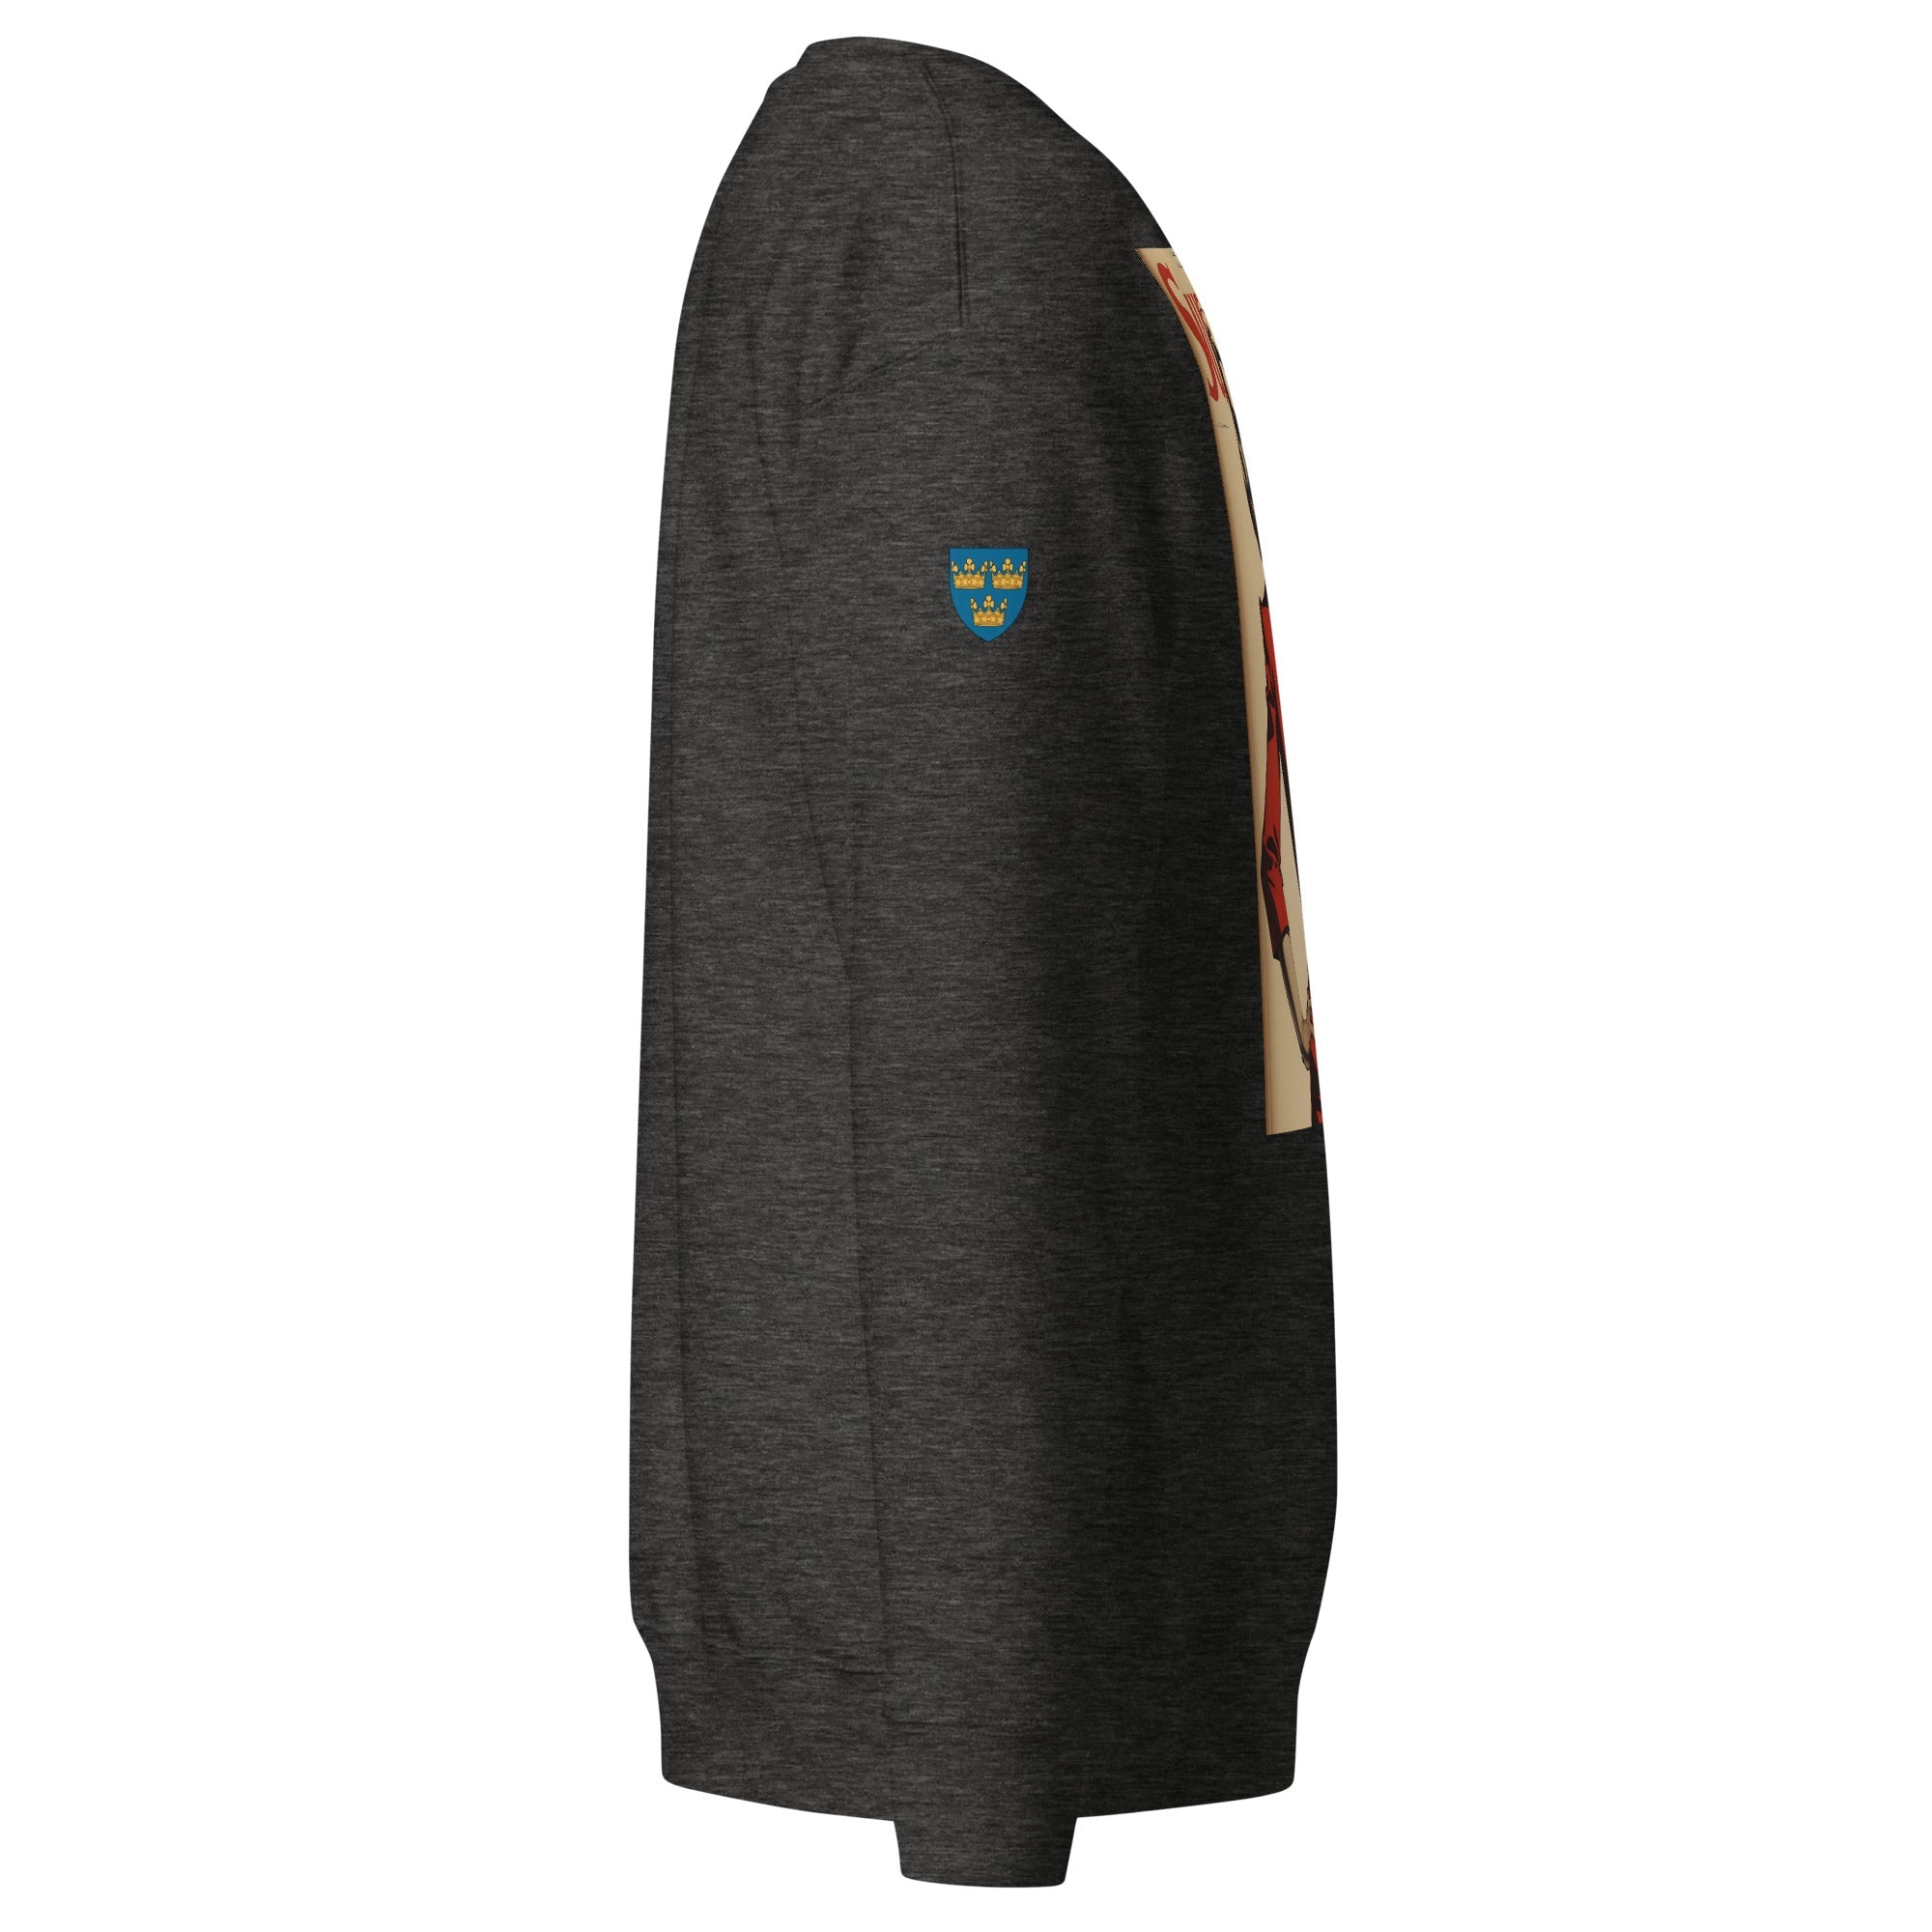 Unisex Premium Sweatshirt - Swedish Vintage Fashion Series v.43 - GRAPHIC T-SHIRTS